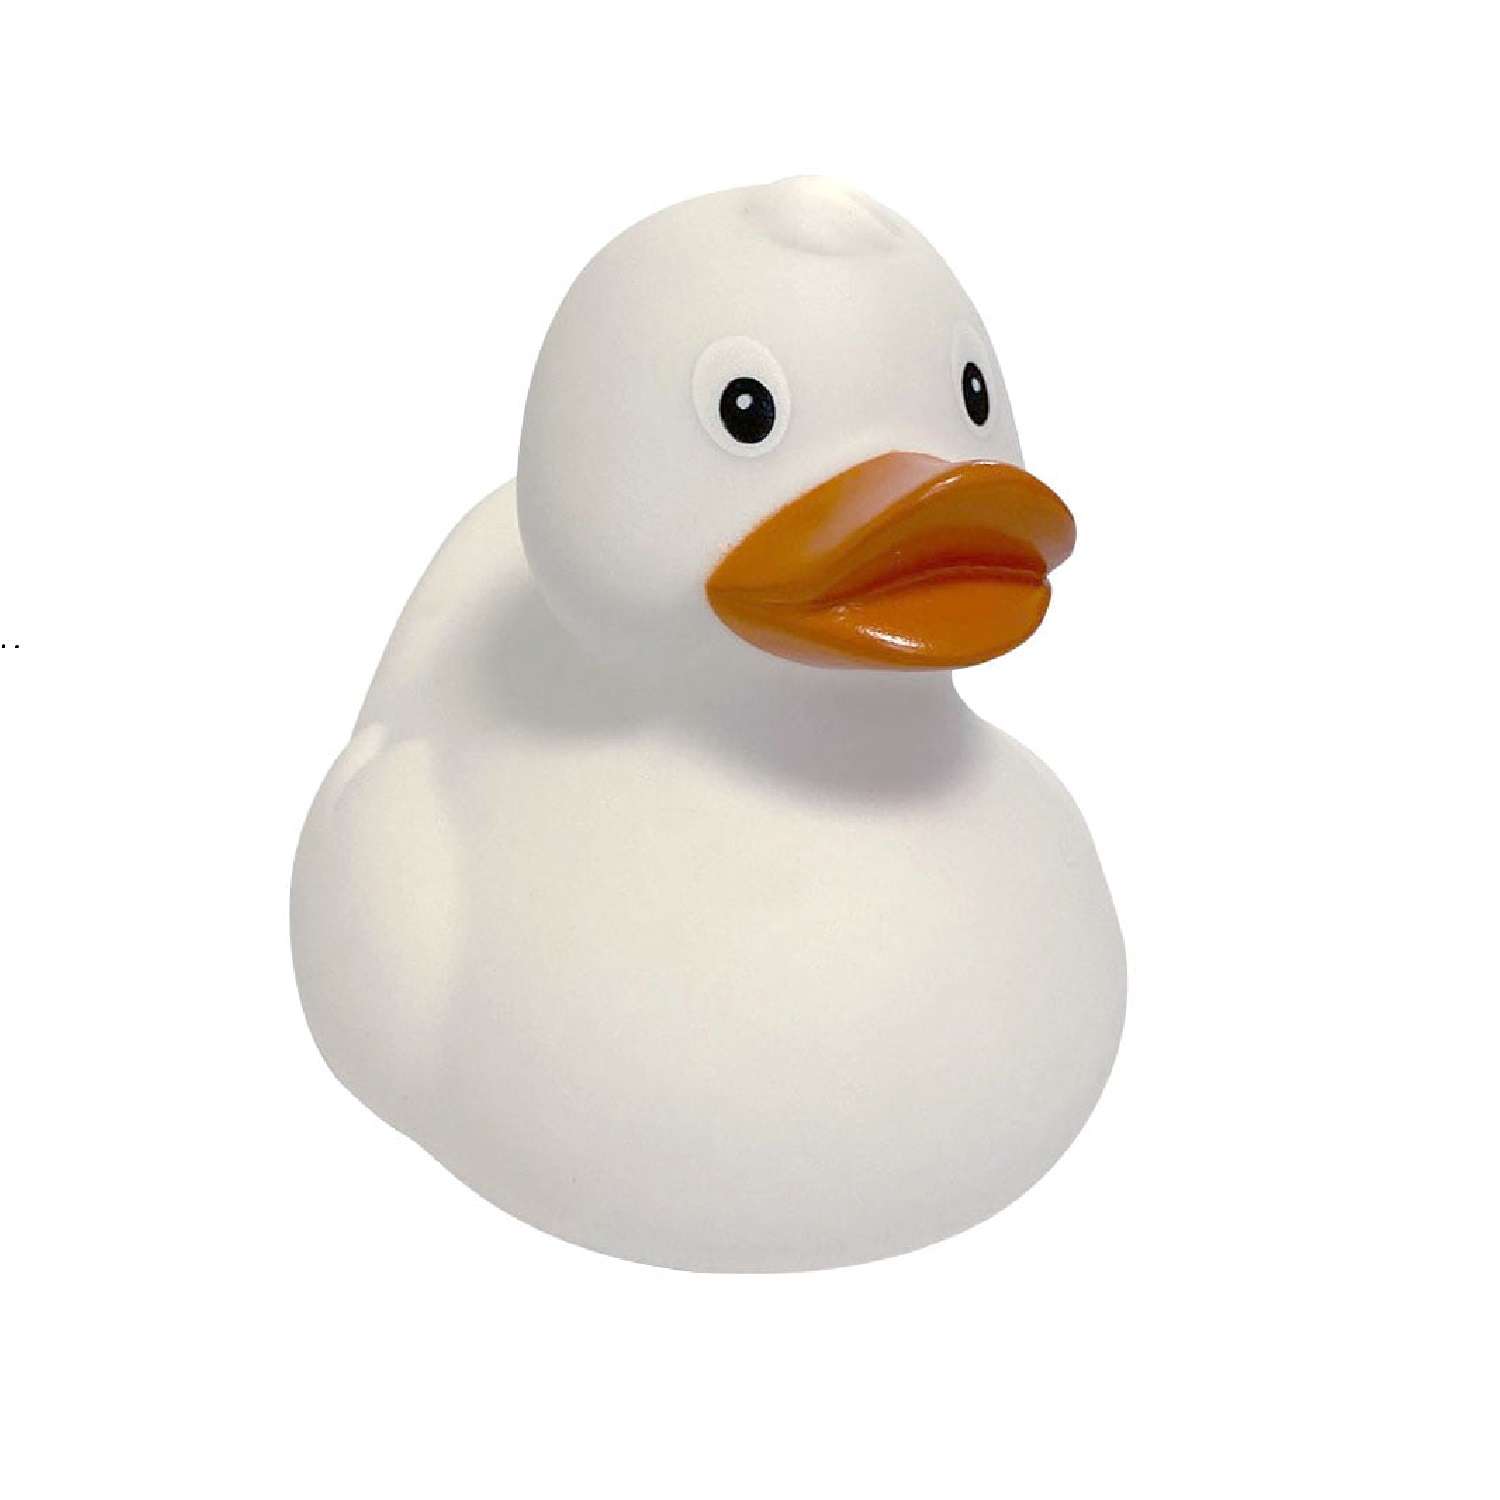 Игрушка Funny ducks для ванной Белая уточка 1303 - фото 1